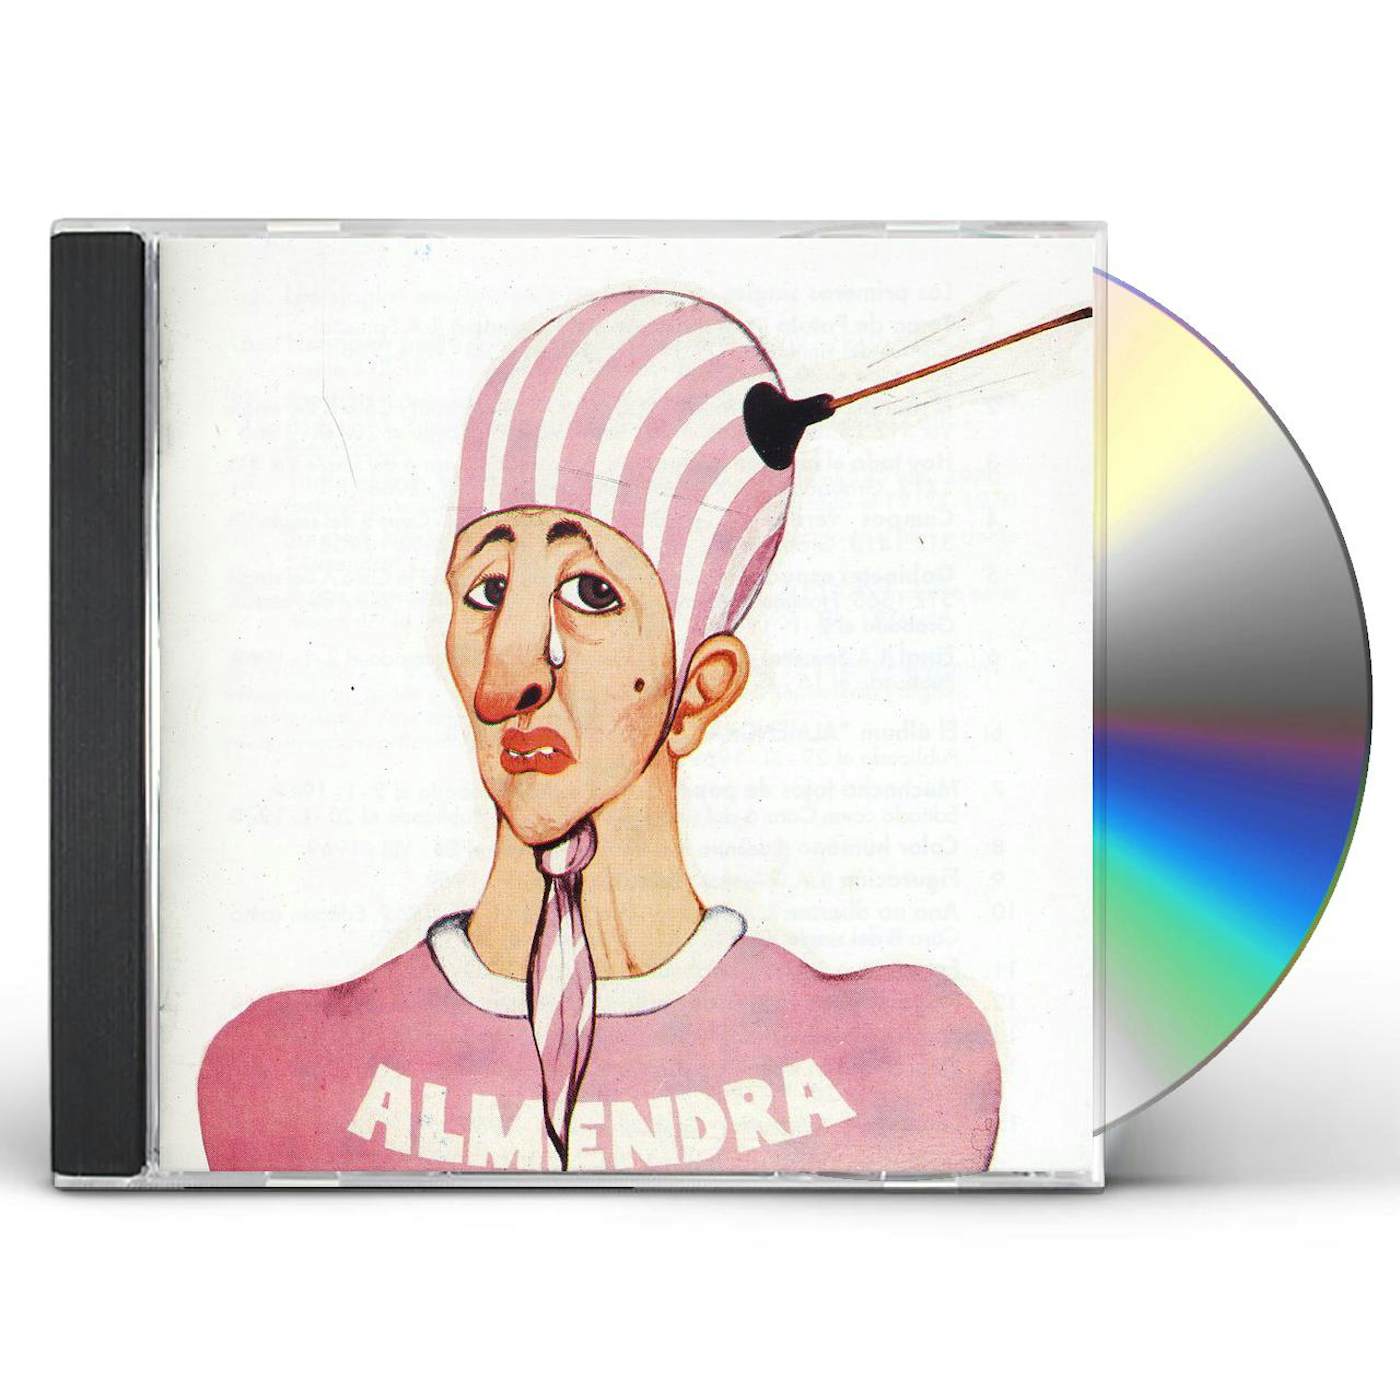 ALMENDRA CD